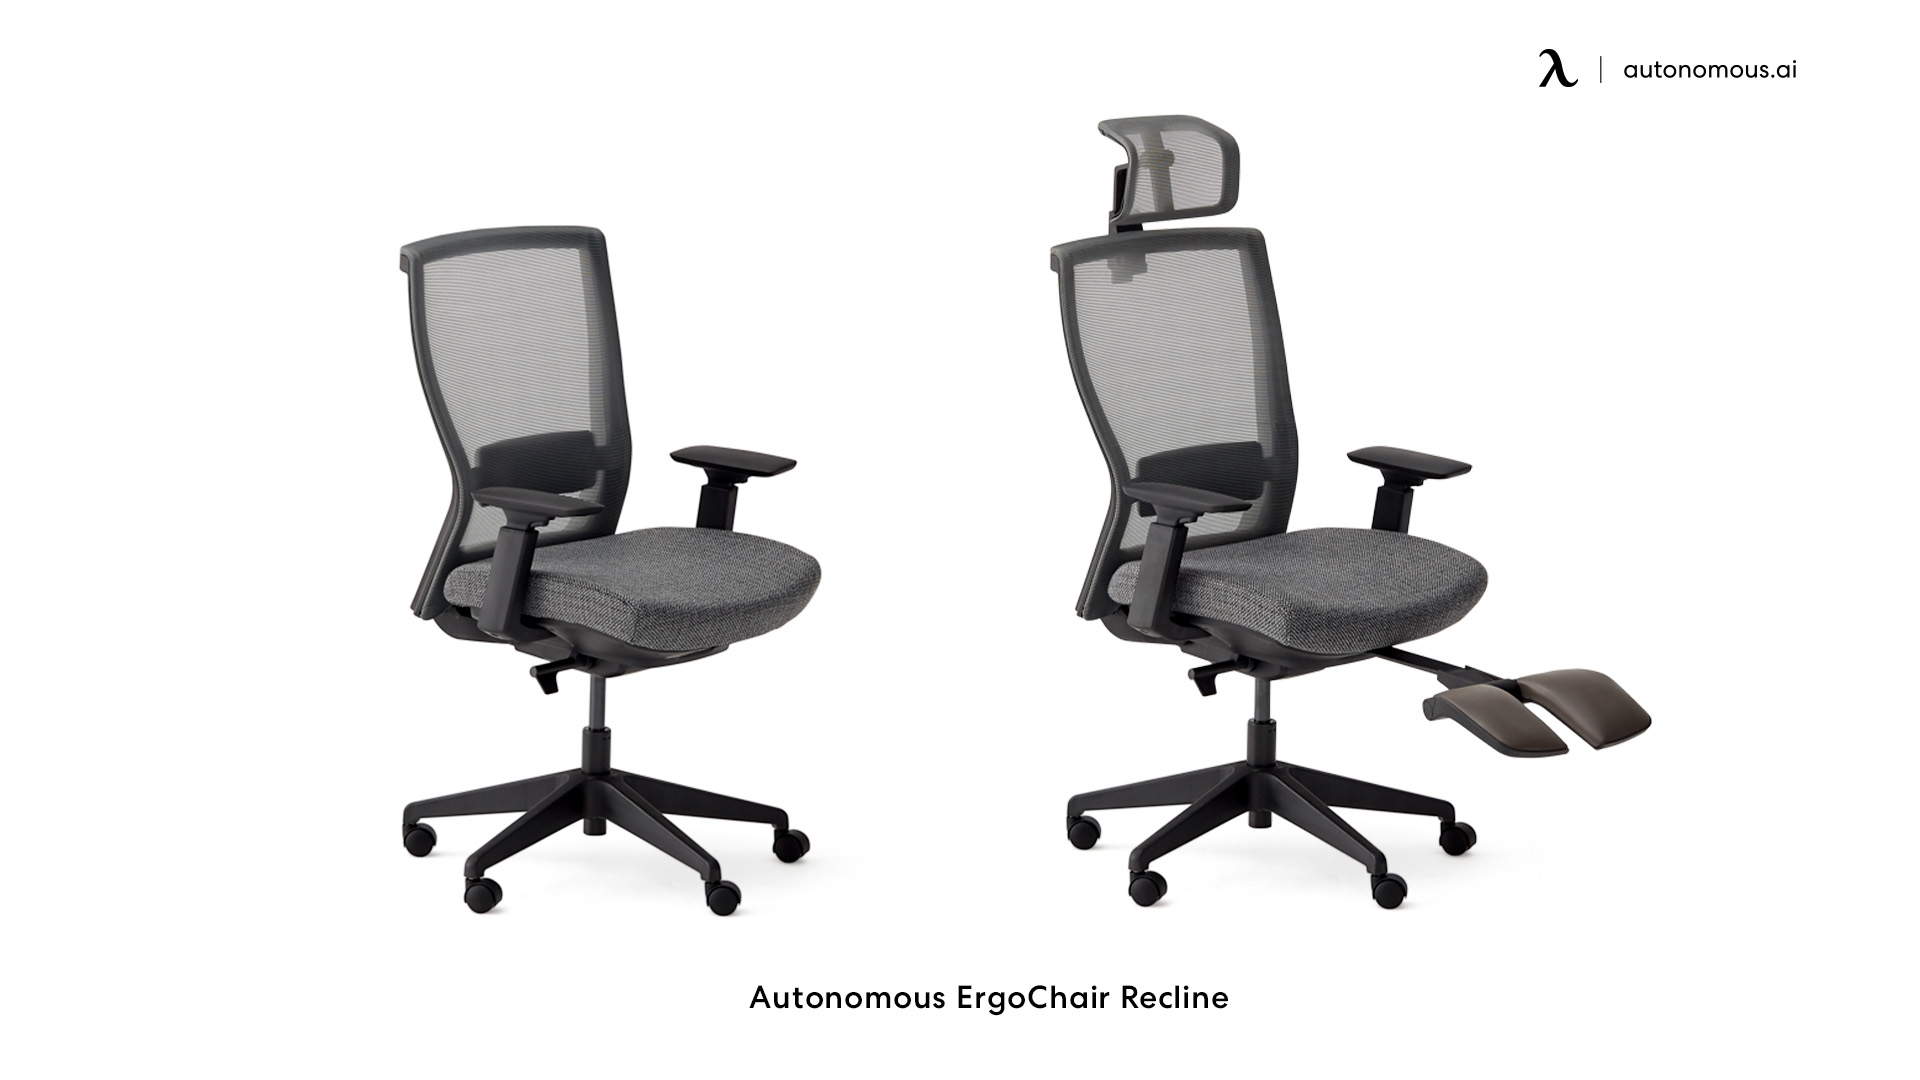 ErgoChair Recline adjustable height chair